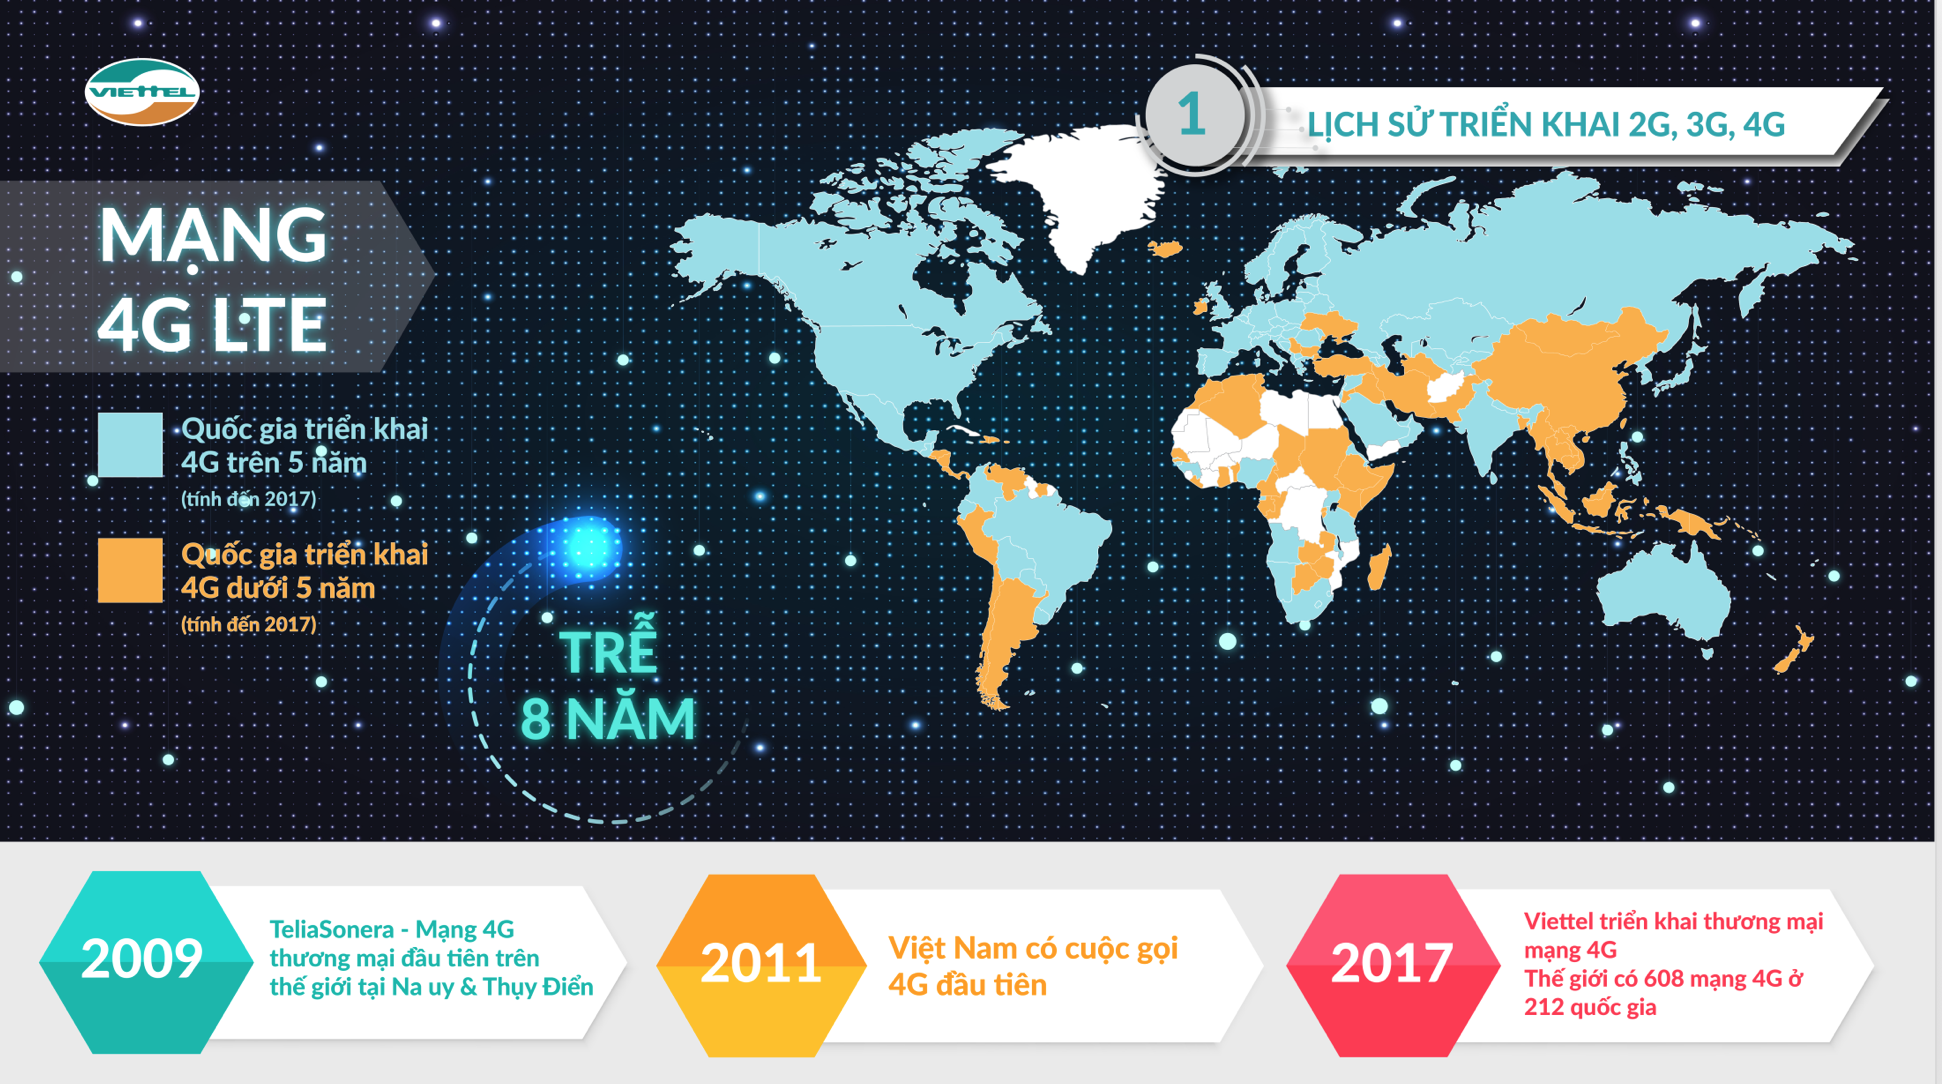 Lịch sử hình thành và phát triển của mạng di động 4G tại thế giới và Việt Nam. (Nguồn: Viettel)